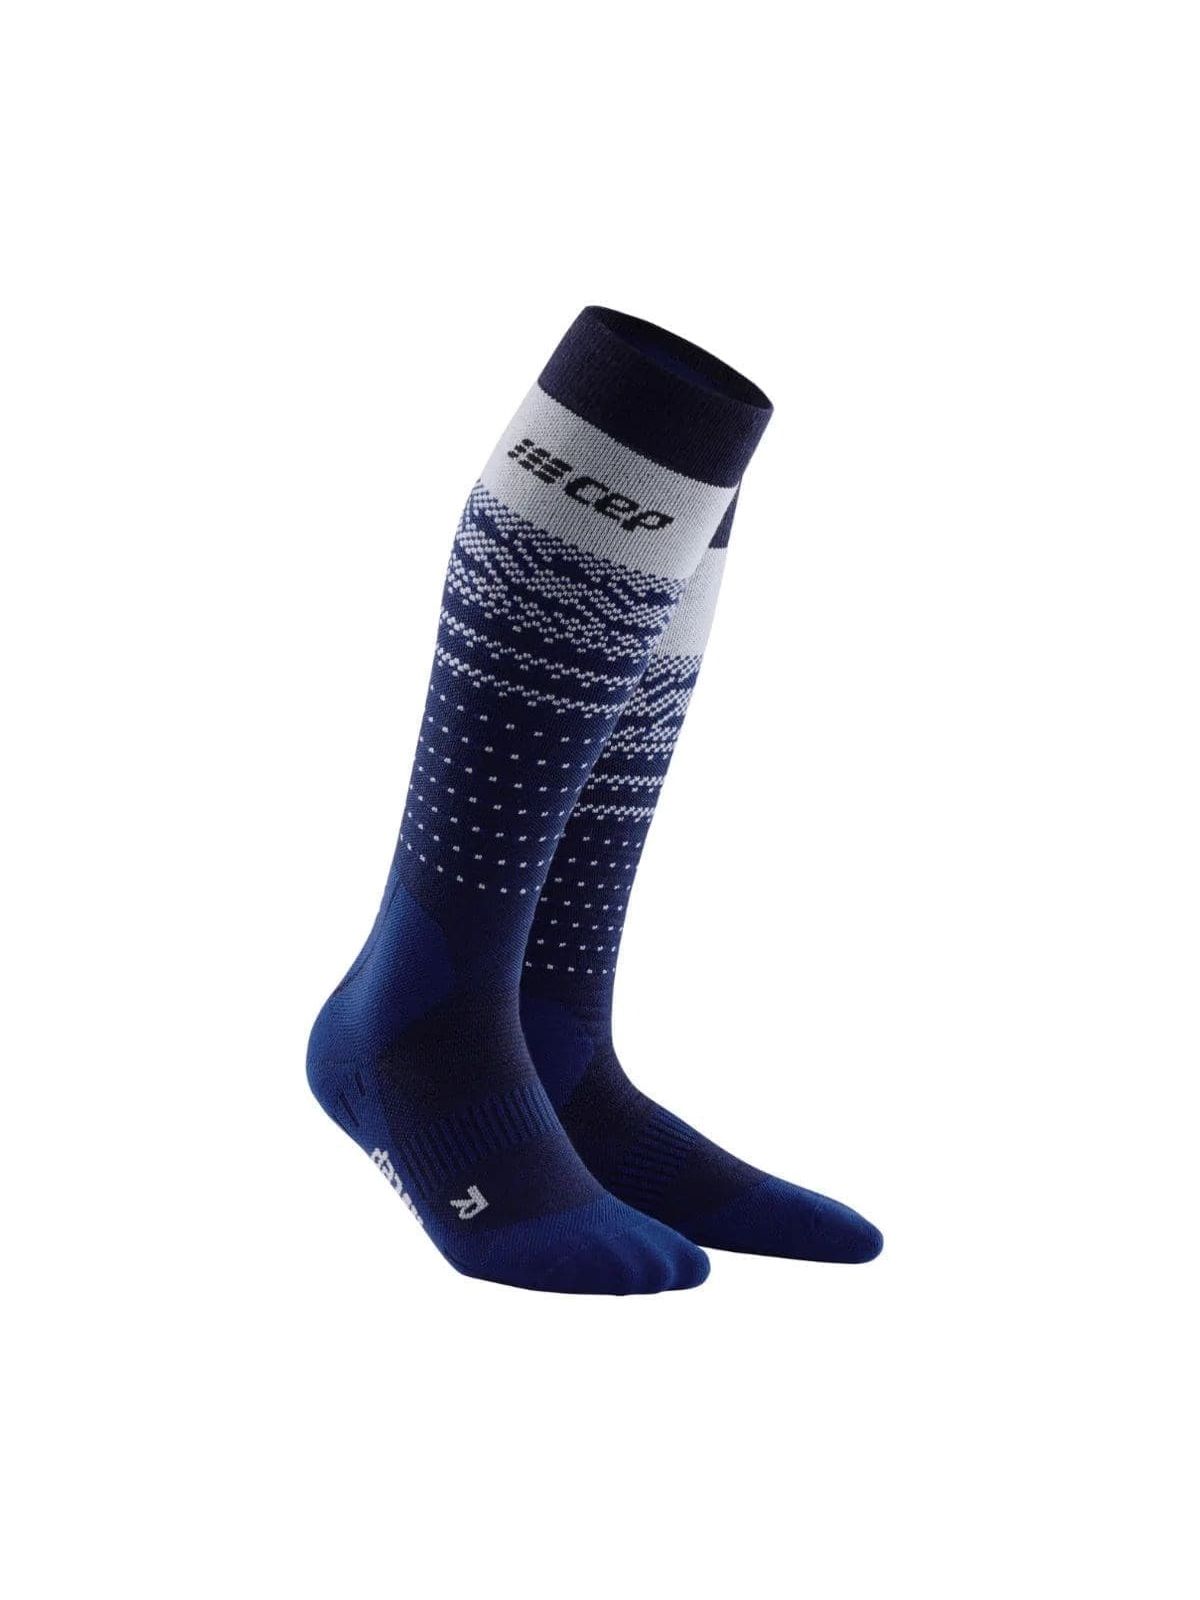 Гольфы женские CEP Touring Socks синие 42-44